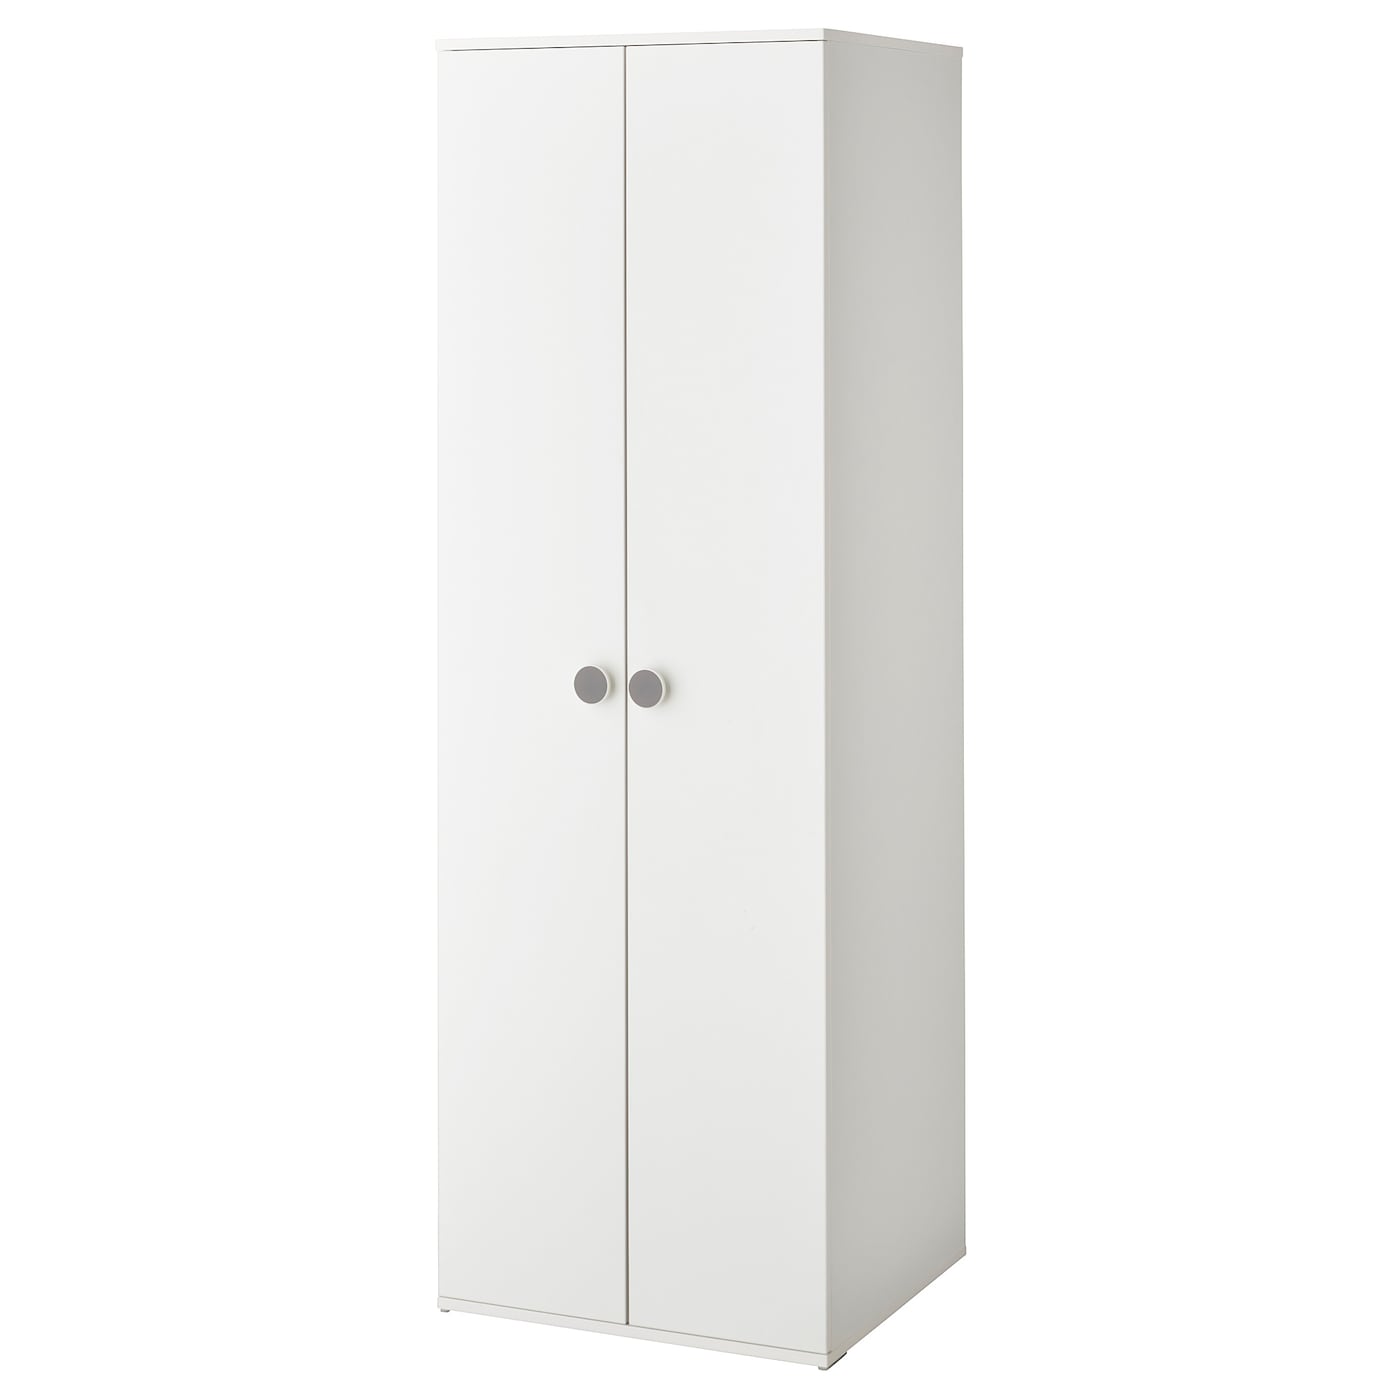 Шкаф детский - IKEA GODISHUS, 60x51x178 см, белый, ГОДИХУС ИКЕА